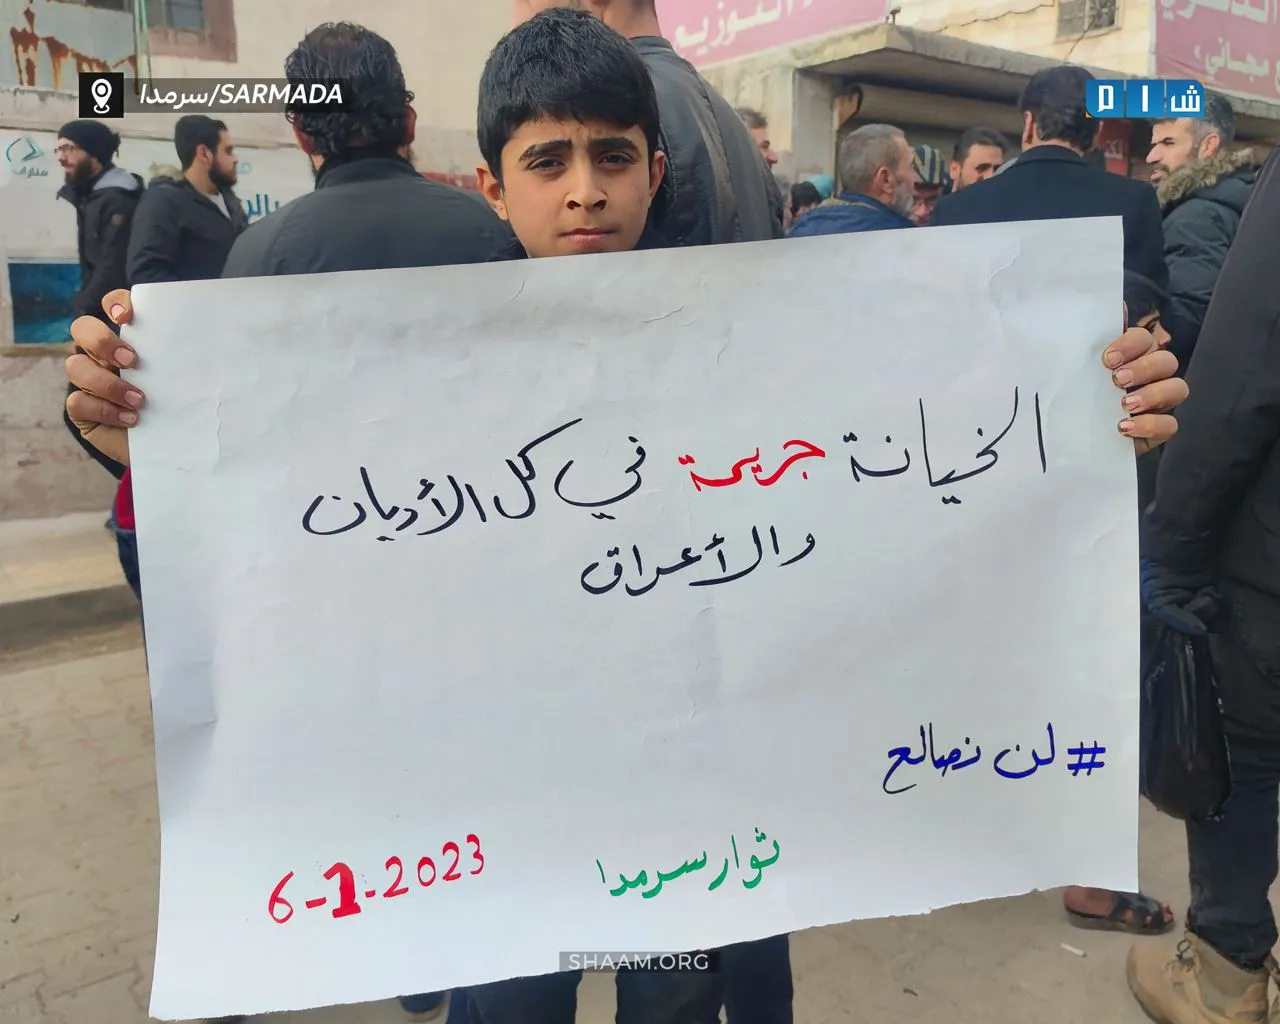 أحرار مدينة سرمدا في ريف إدلب يتظاهرون مطالبين بإسقاط نظام الأسد، وتنديداً بالتطبيع التركي مع الأسد.